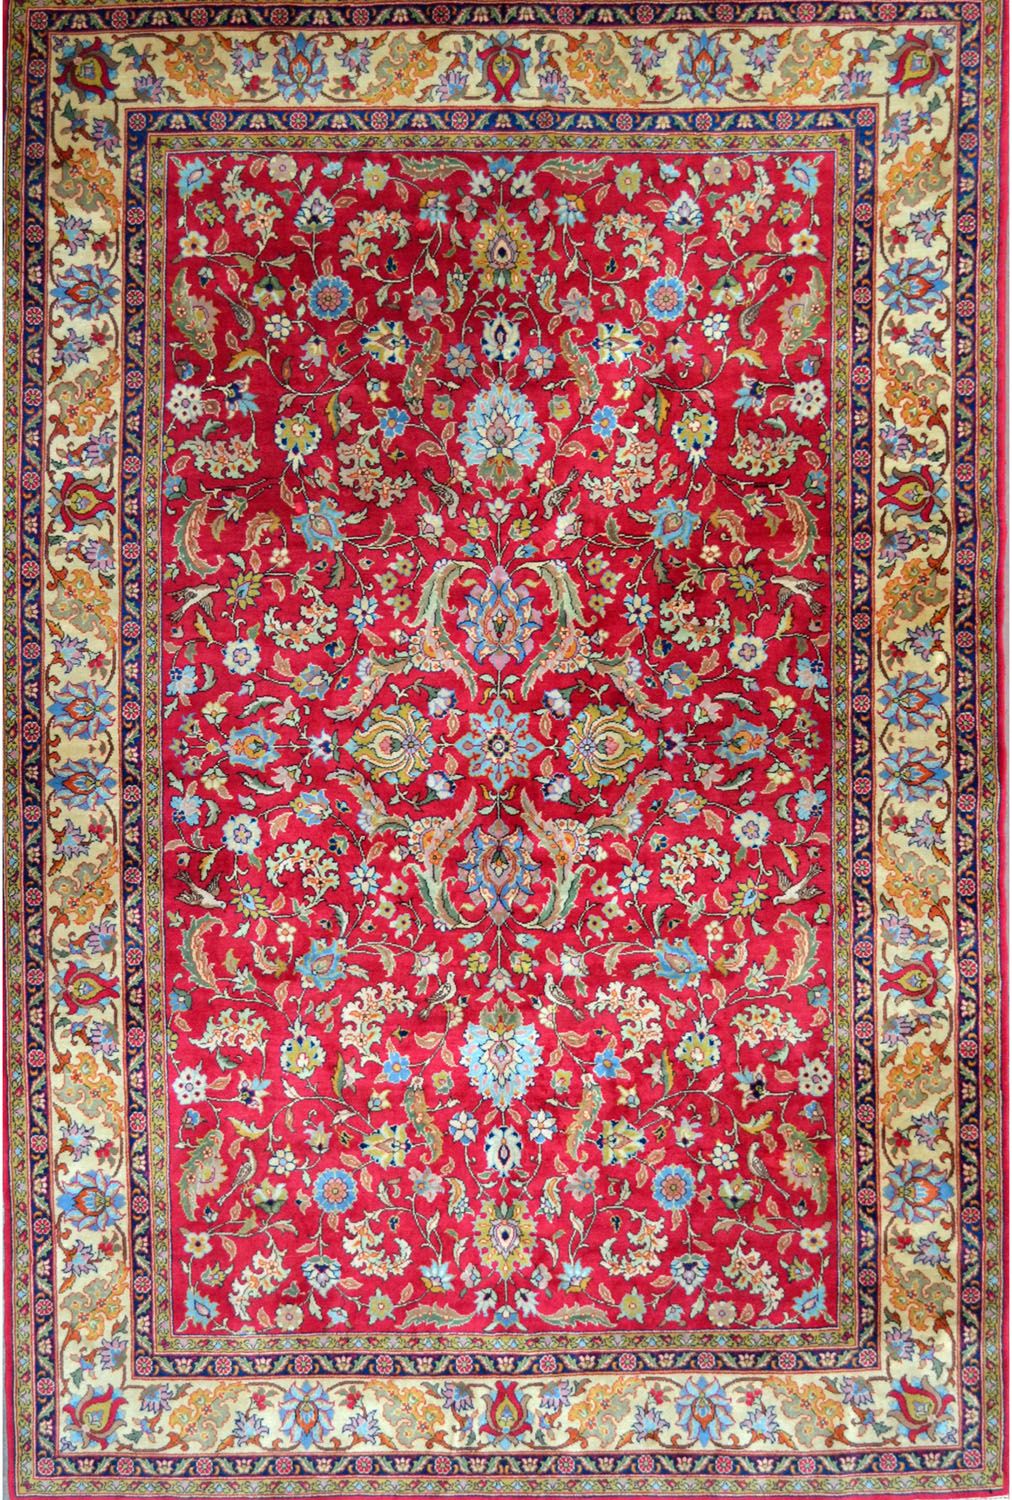 Null 罗马尼亚重要的地毯。1975年左右。技术特点：棉底羊毛天鹅绒。美丽的多色性。红宝石田地，多色的花朵和钻石形式的造型叶子。五条边线，主线为米黄色，有交错&hellip;